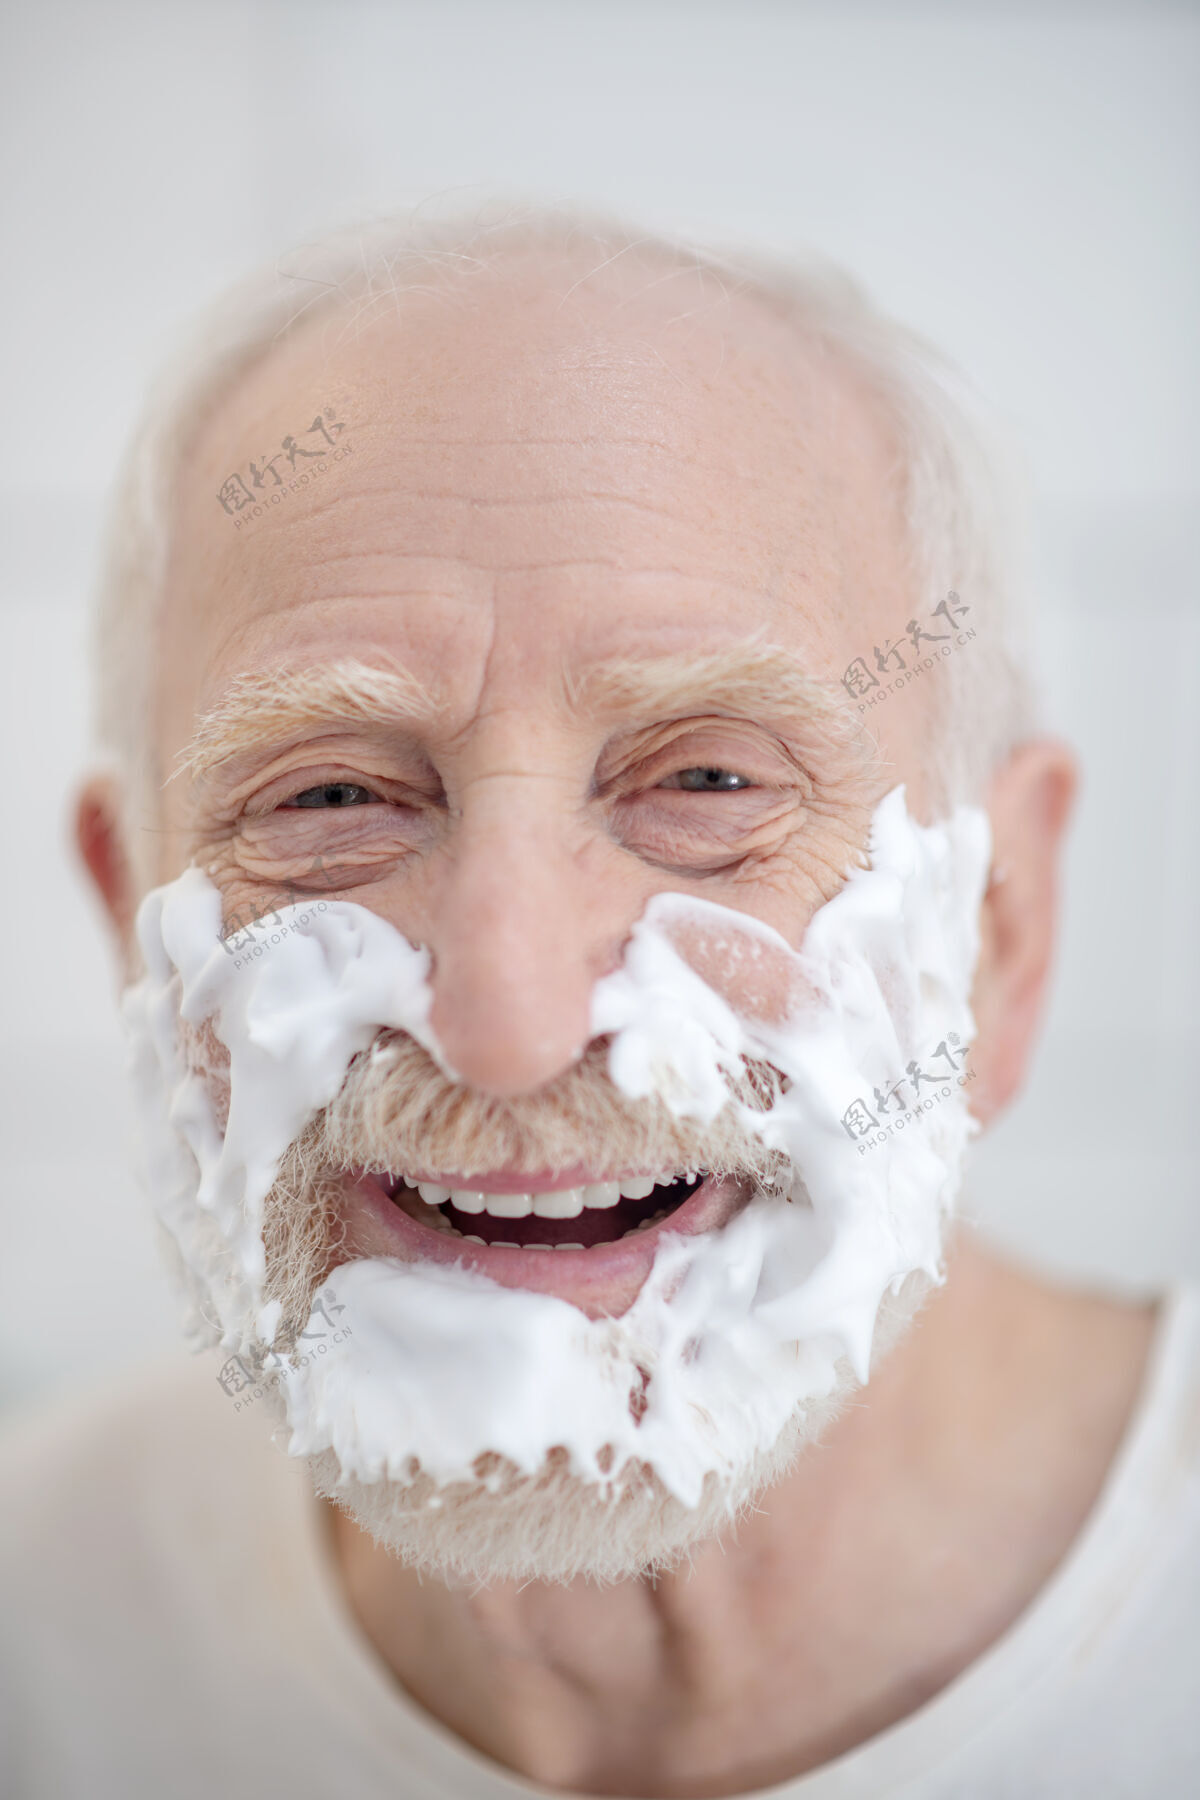 腰围向上剃须关闭一个脸上有剃须泡沫的男人的照片公寓日常老年人